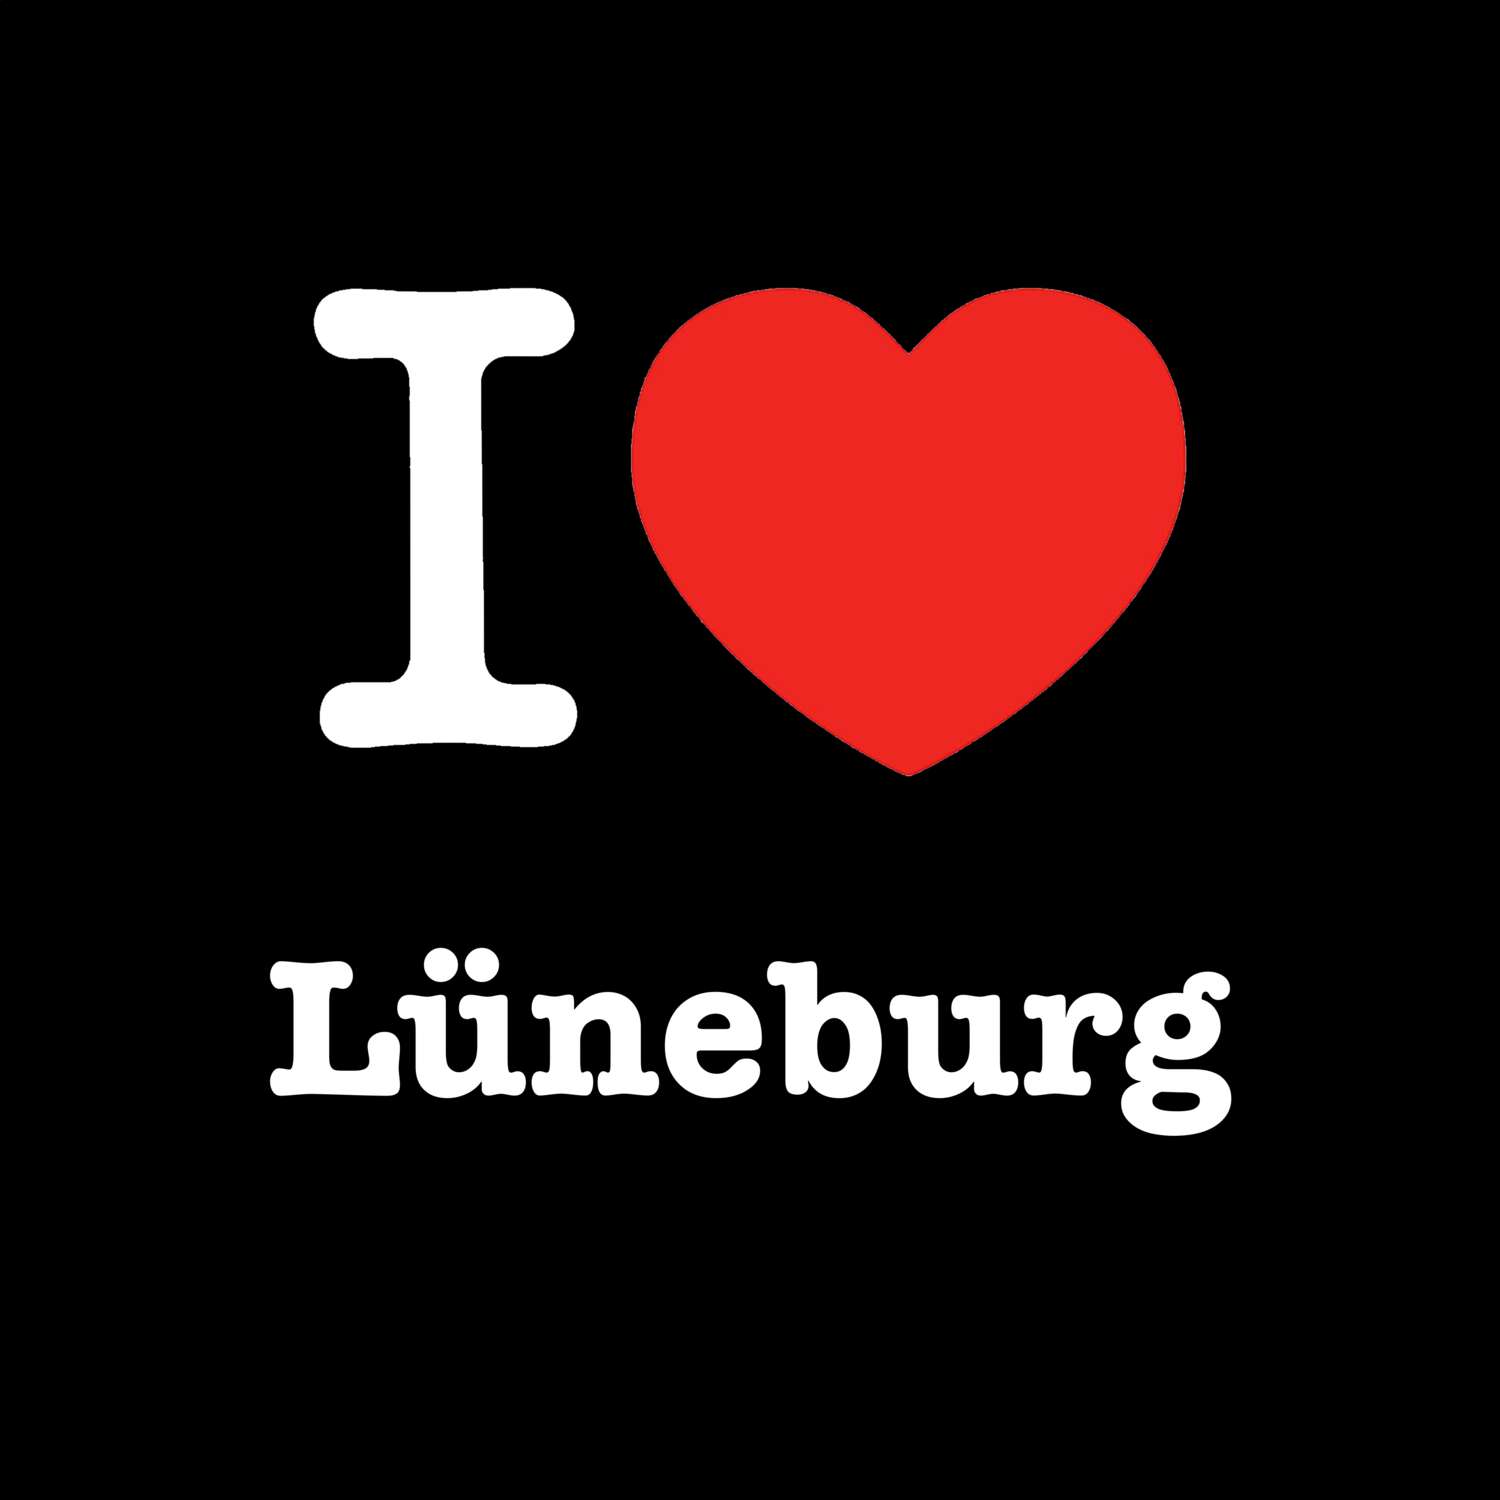 Lüneburg T-Shirt »I love«